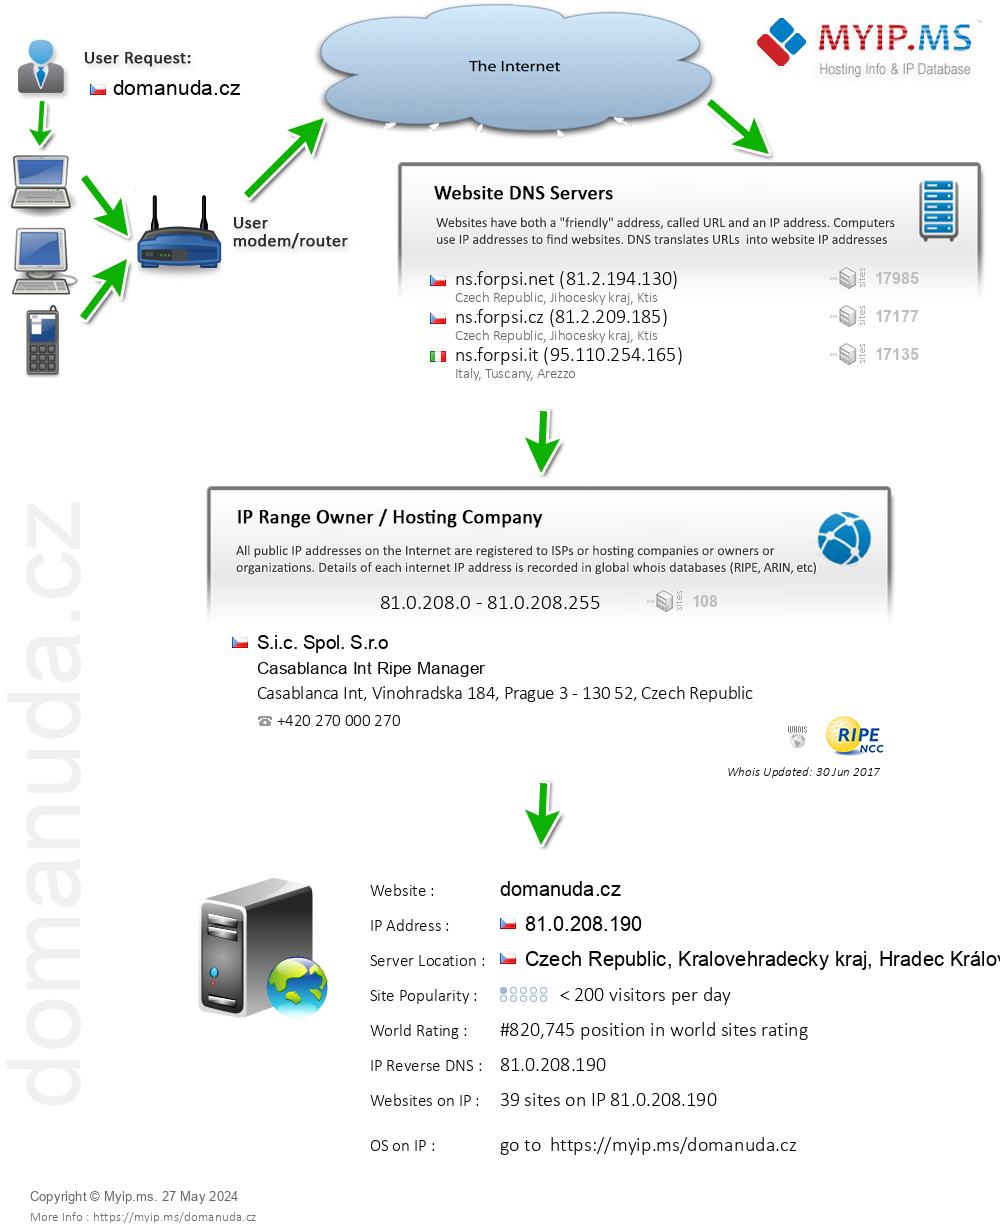 Domanuda.cz - Website Hosting Visual IP Diagram